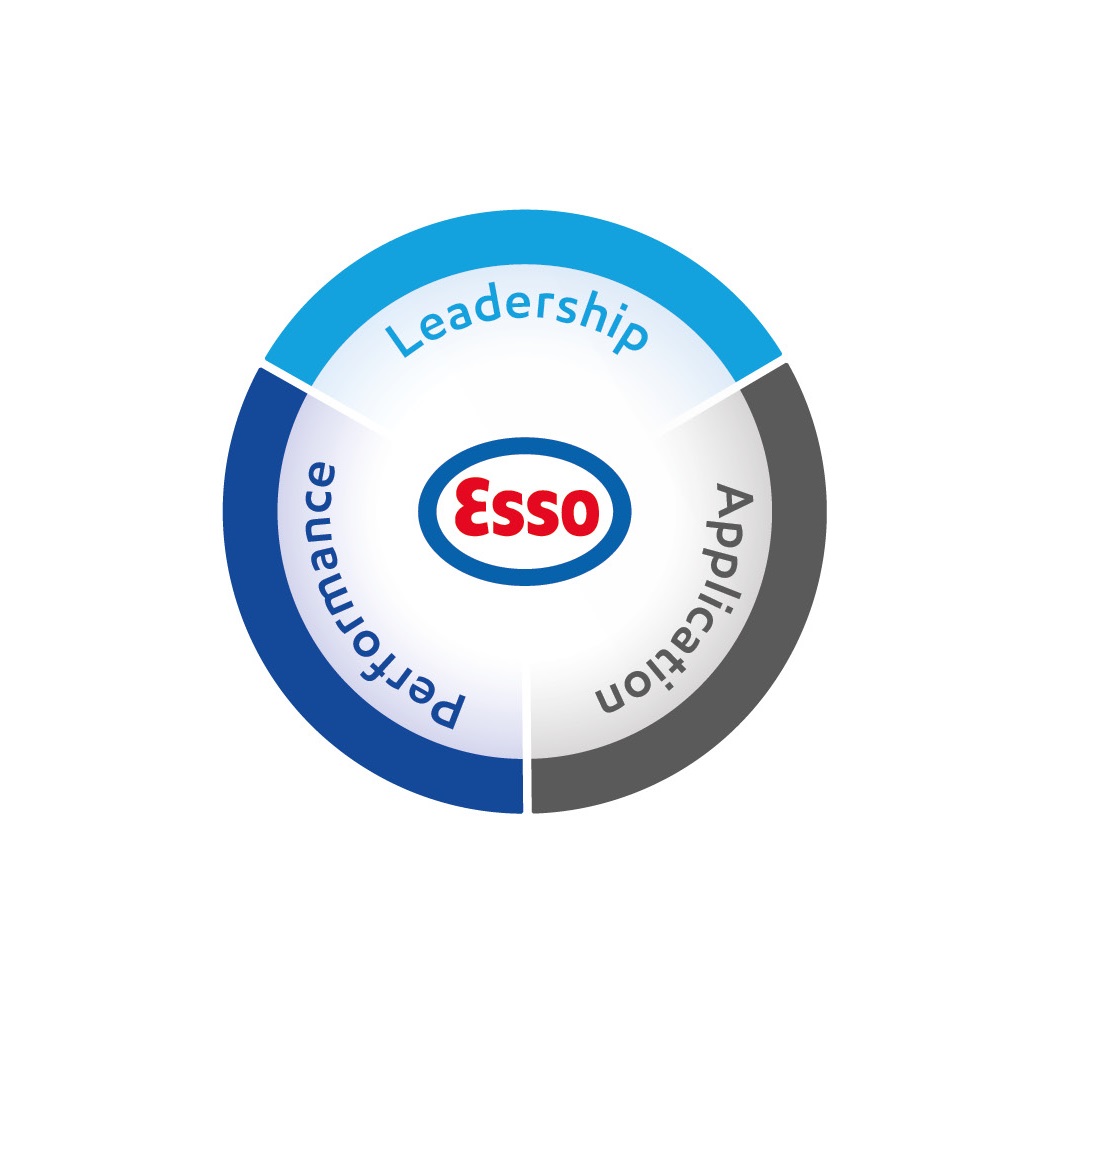 Schéma expliquant comment Esso S.A.F. approche la durabilité : Leadership / Application / Performance